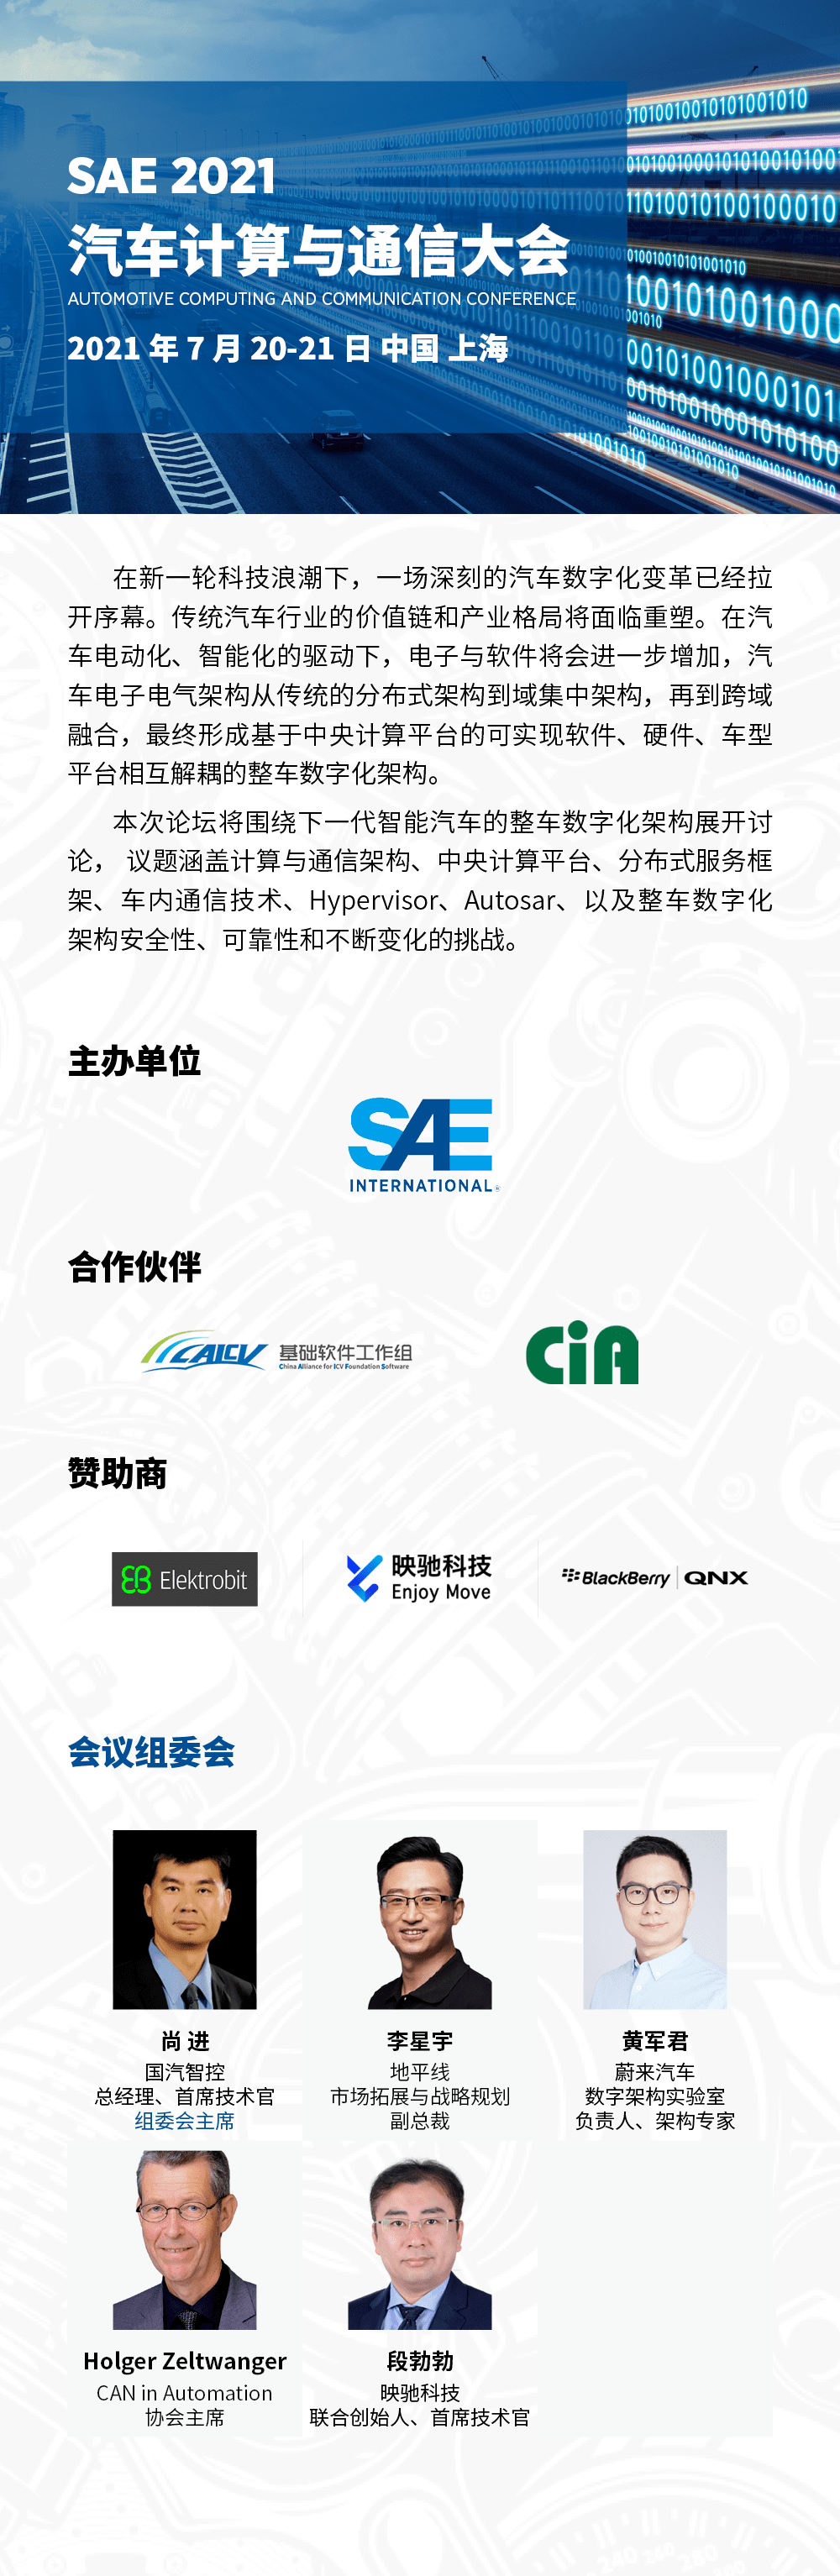 Sae 汽车计算与通信大会 7月 21日上海举办 演讲 展位招募中 Zhao Sae